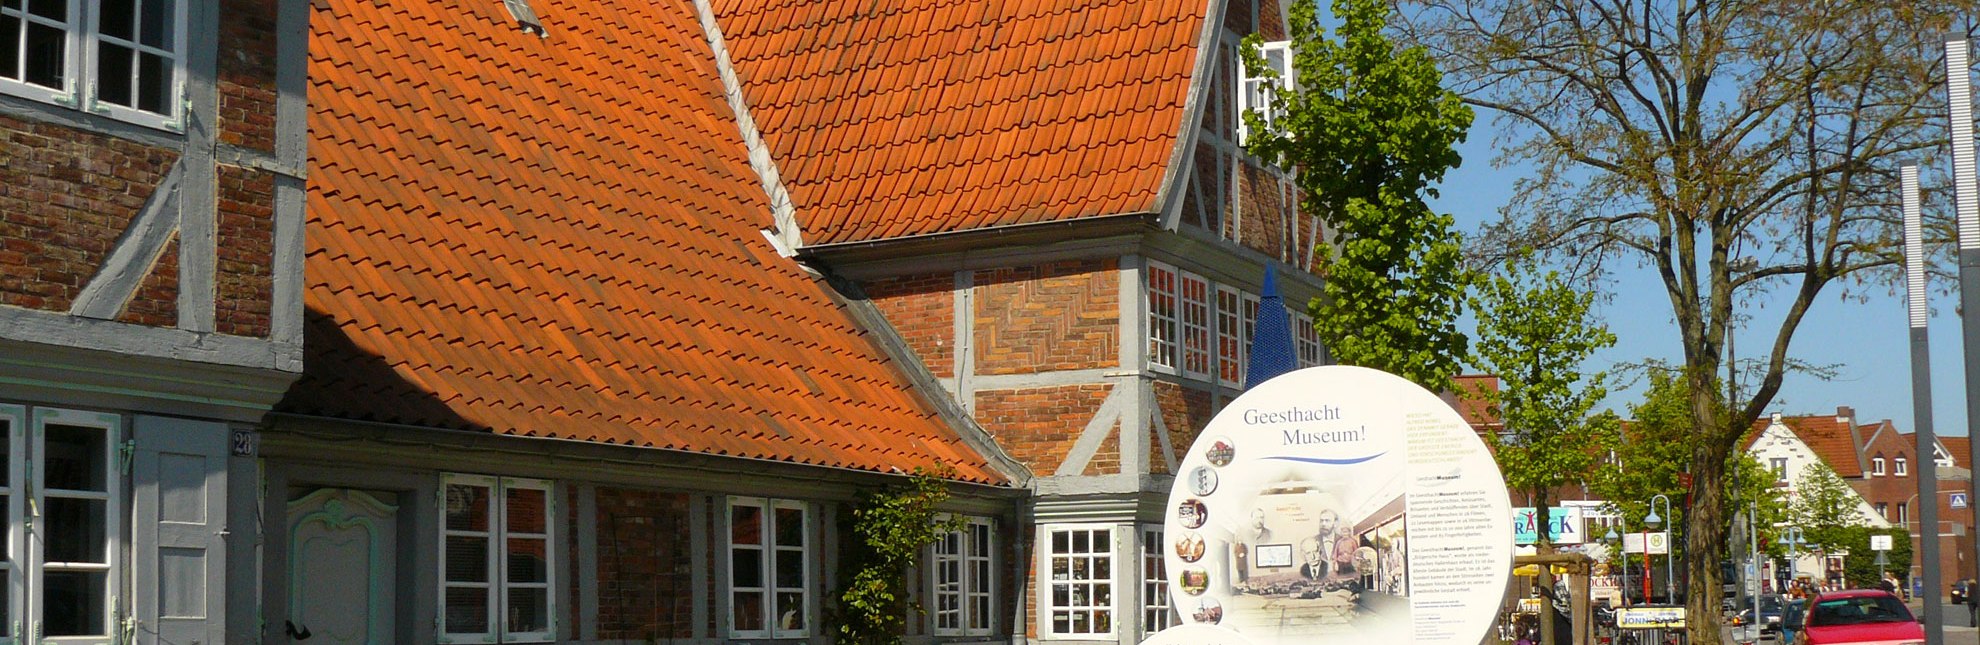 Krügersches Haus - Tourist-Information und GeesthachtMuseum!, © Tourist-Information Geesthacht